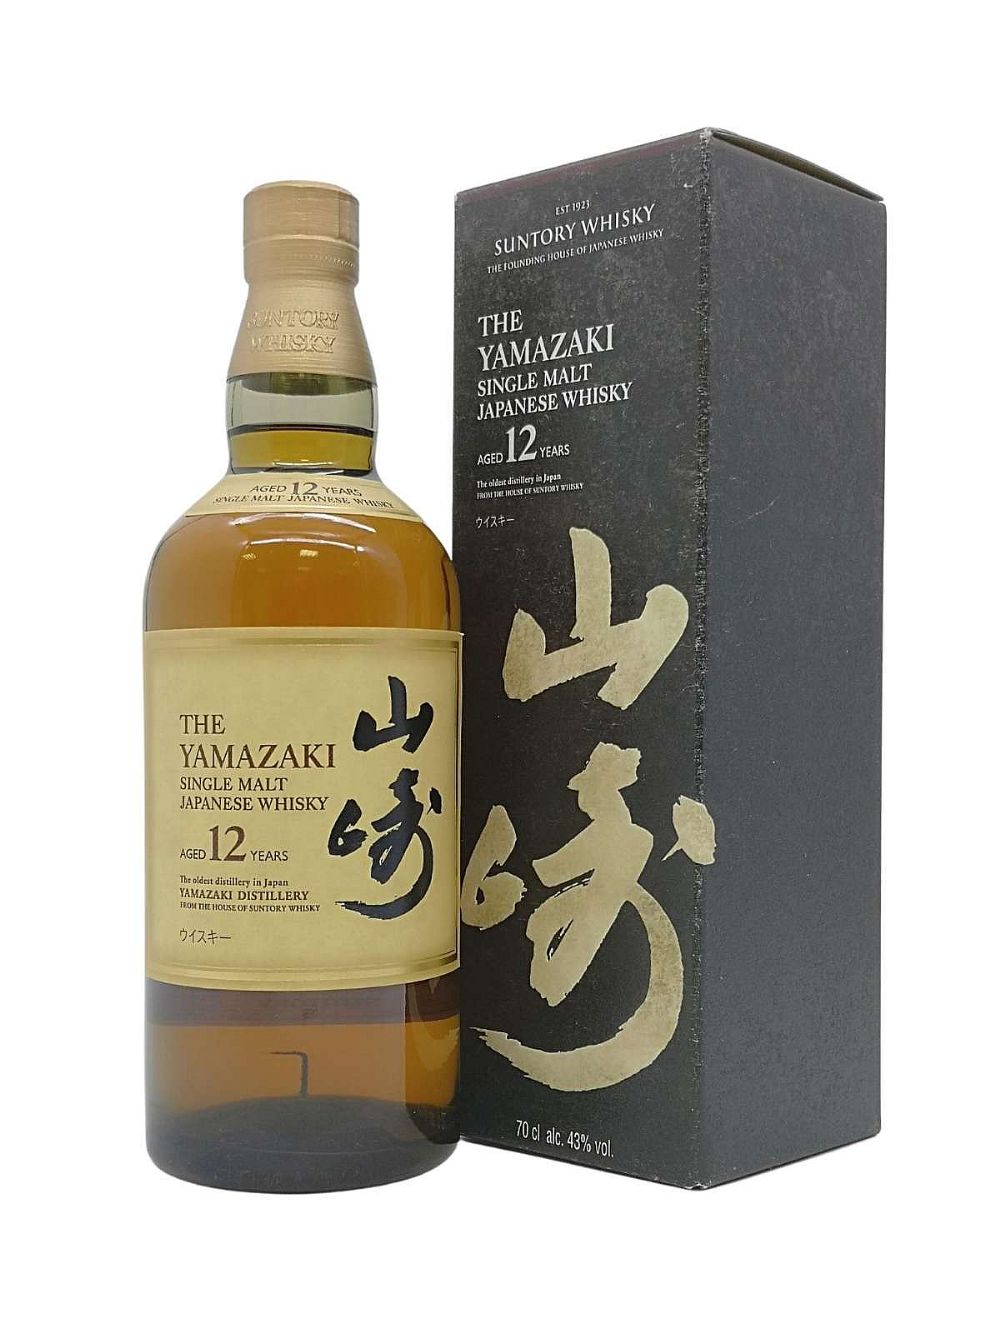 The Yamazaki 12 year old Single Malt Japanese Whiskey